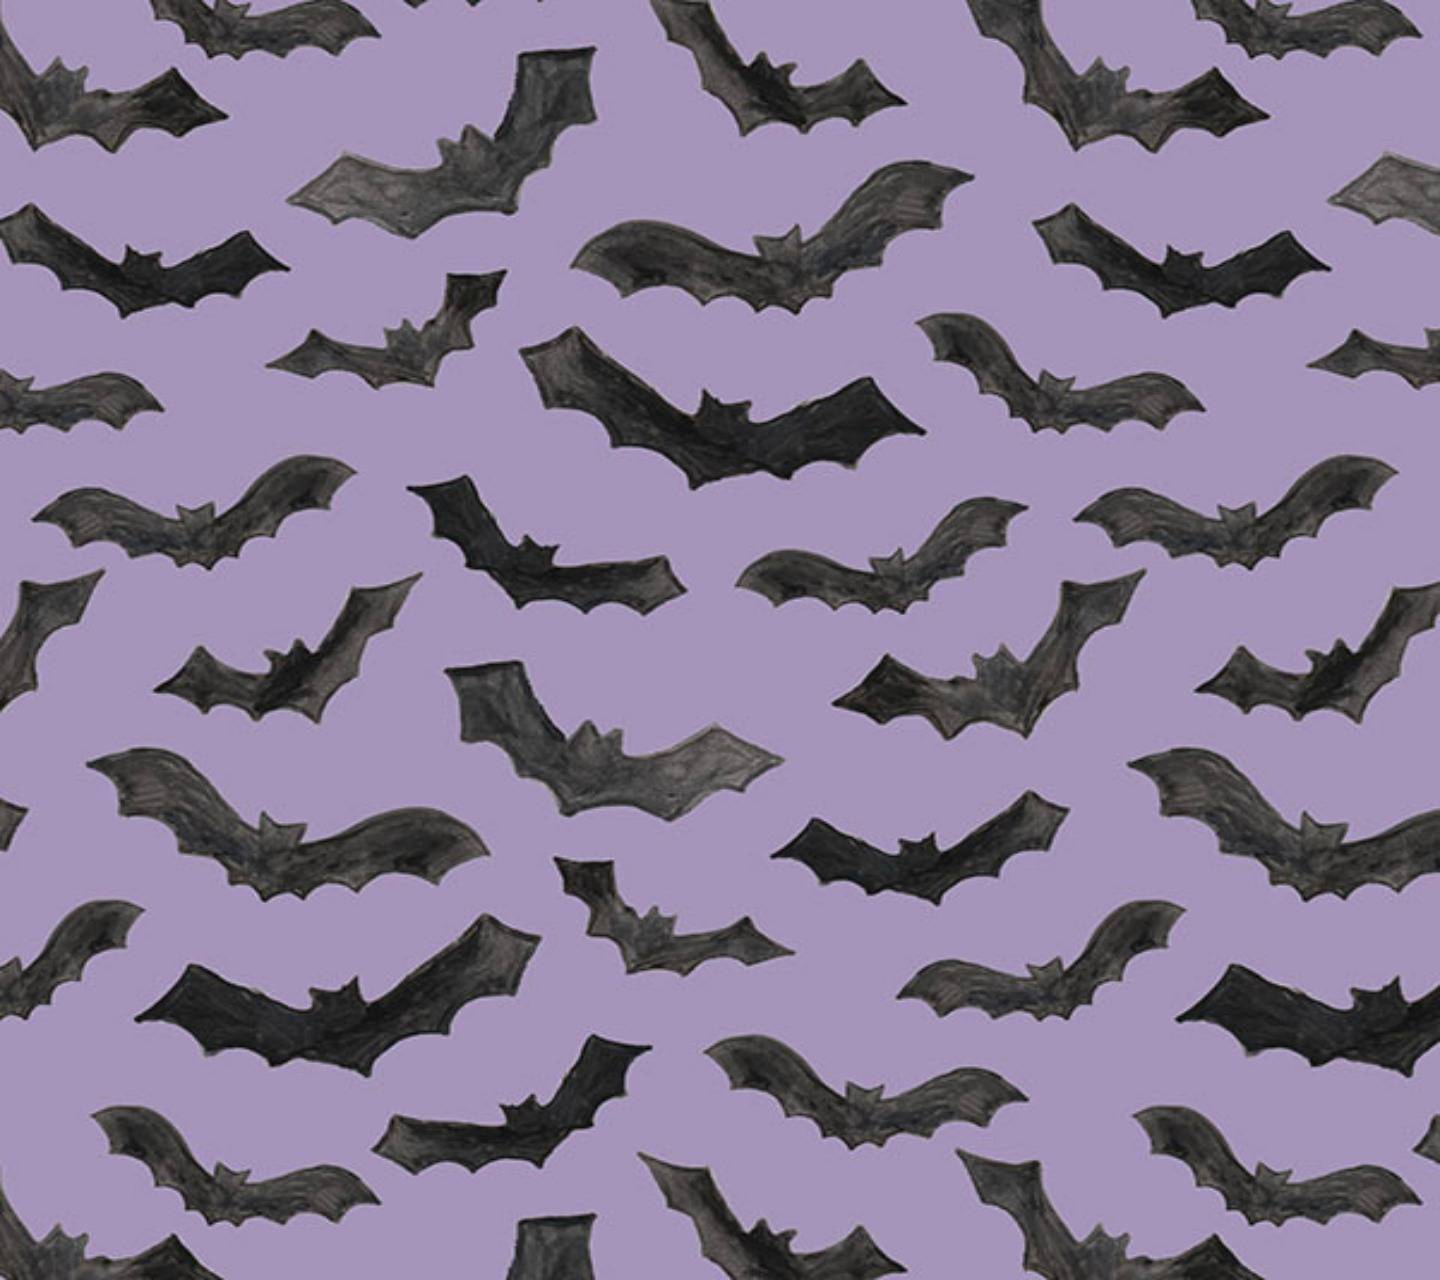 Bats wallpaper